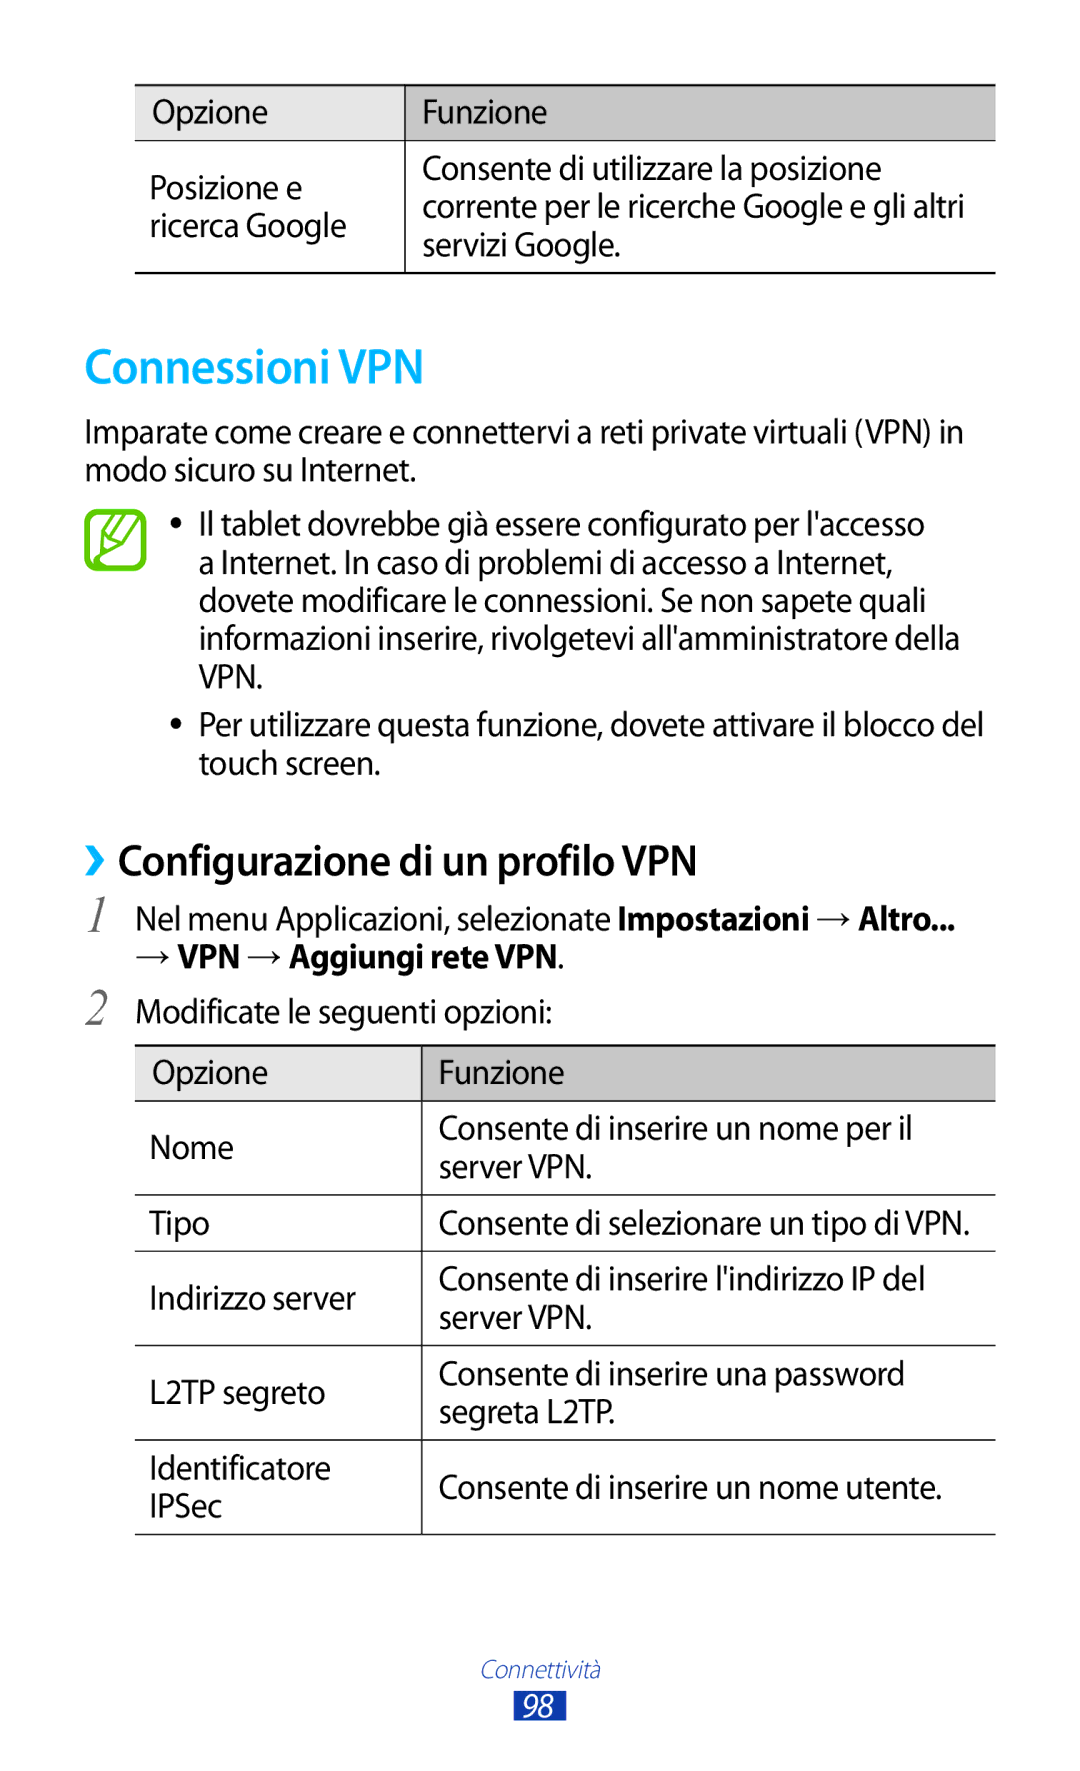 Samsung GT-P7500FKDITV, GT-P7500FKDOMN, GT-P7500UWDHUI, GT-P7500UWDWIN Connessioni VPN, ››Configurazione di un profilo VPN 